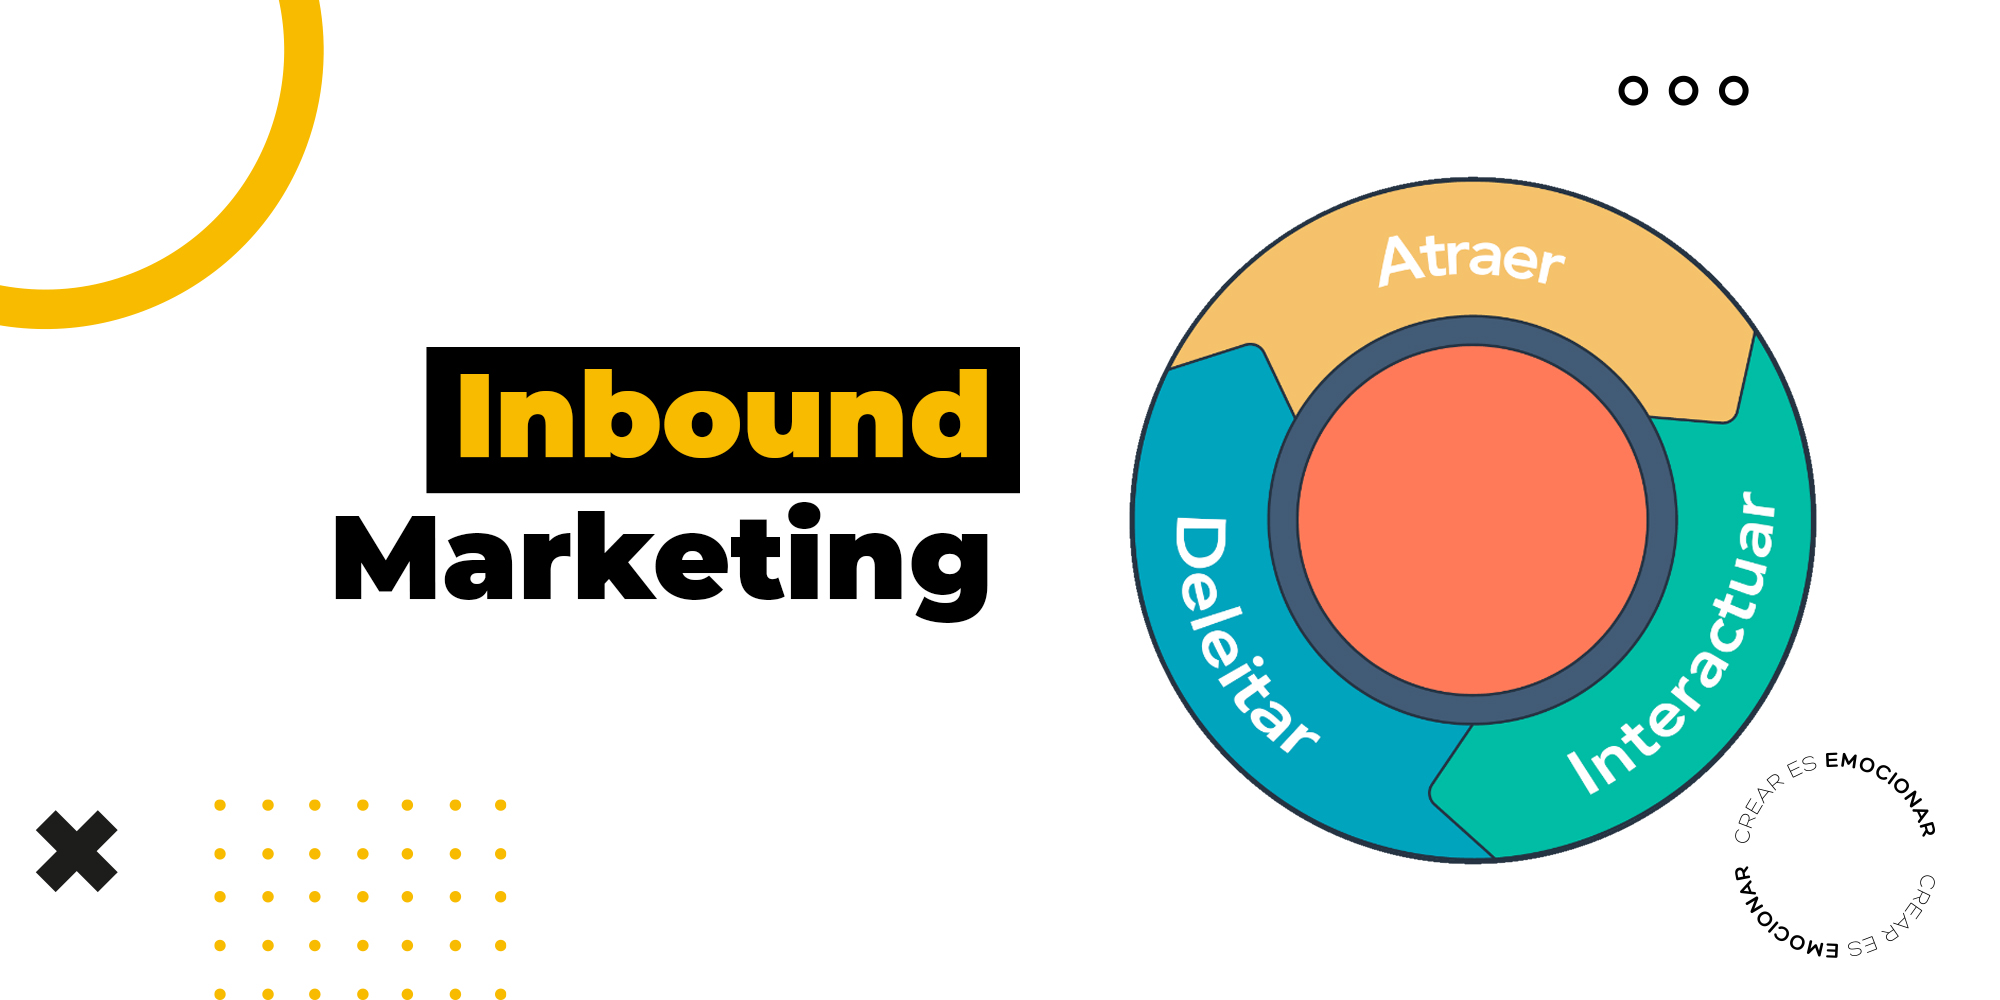 Rueda o flywheel del marketing mostrando las tres etapas del Inbound Marketing de acuerdo a Hubspot: Atraer, Deleitar e Interactuar.